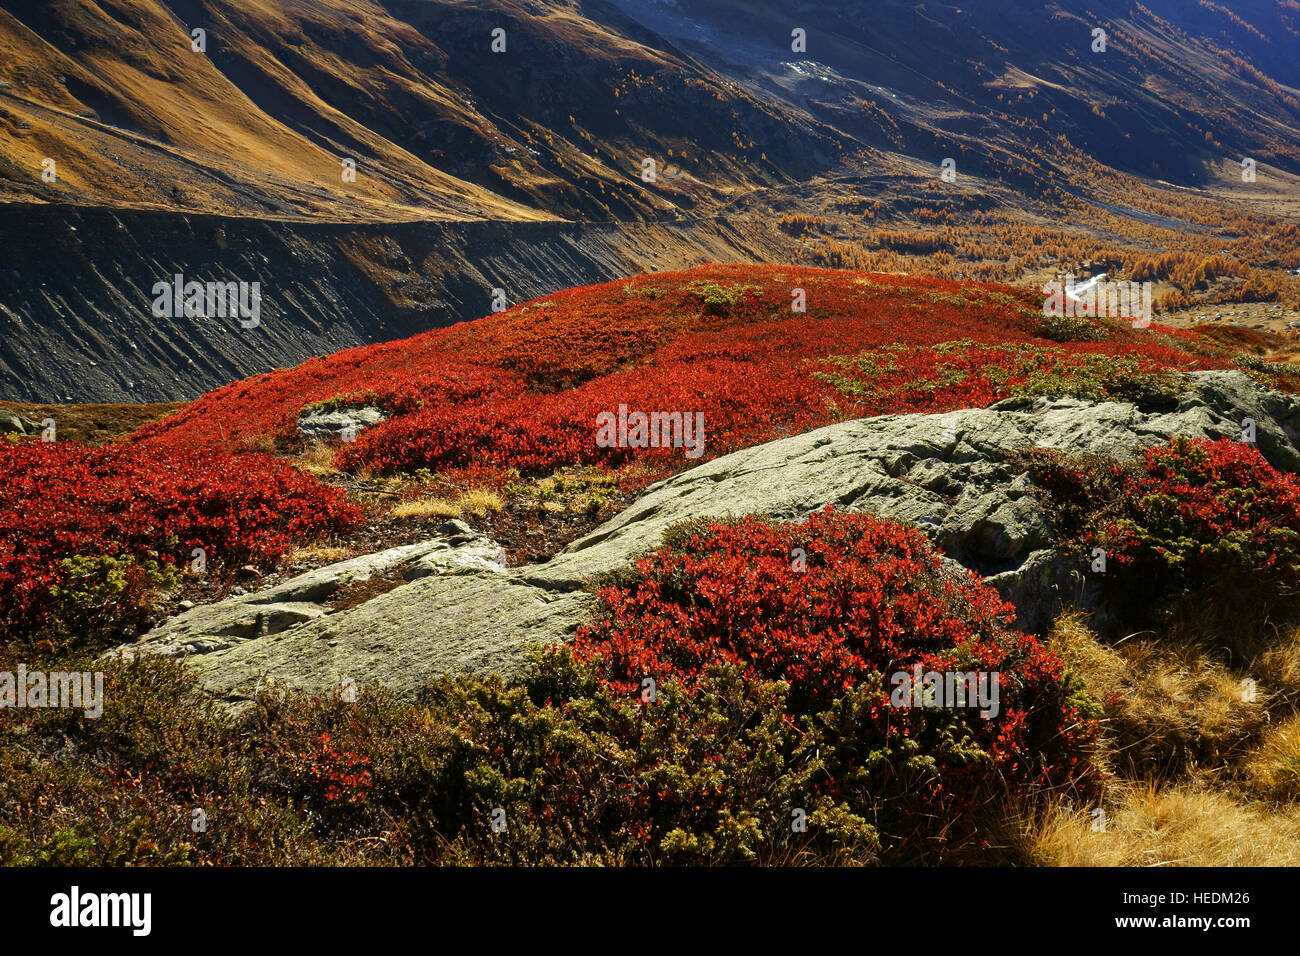 Farben des Herbstes auf alpine Tundra, rote Heidelbeeren, gelben Lärchen. Lötschental, Schweizer Alpen, Wallis, Schweiz Stockfoto